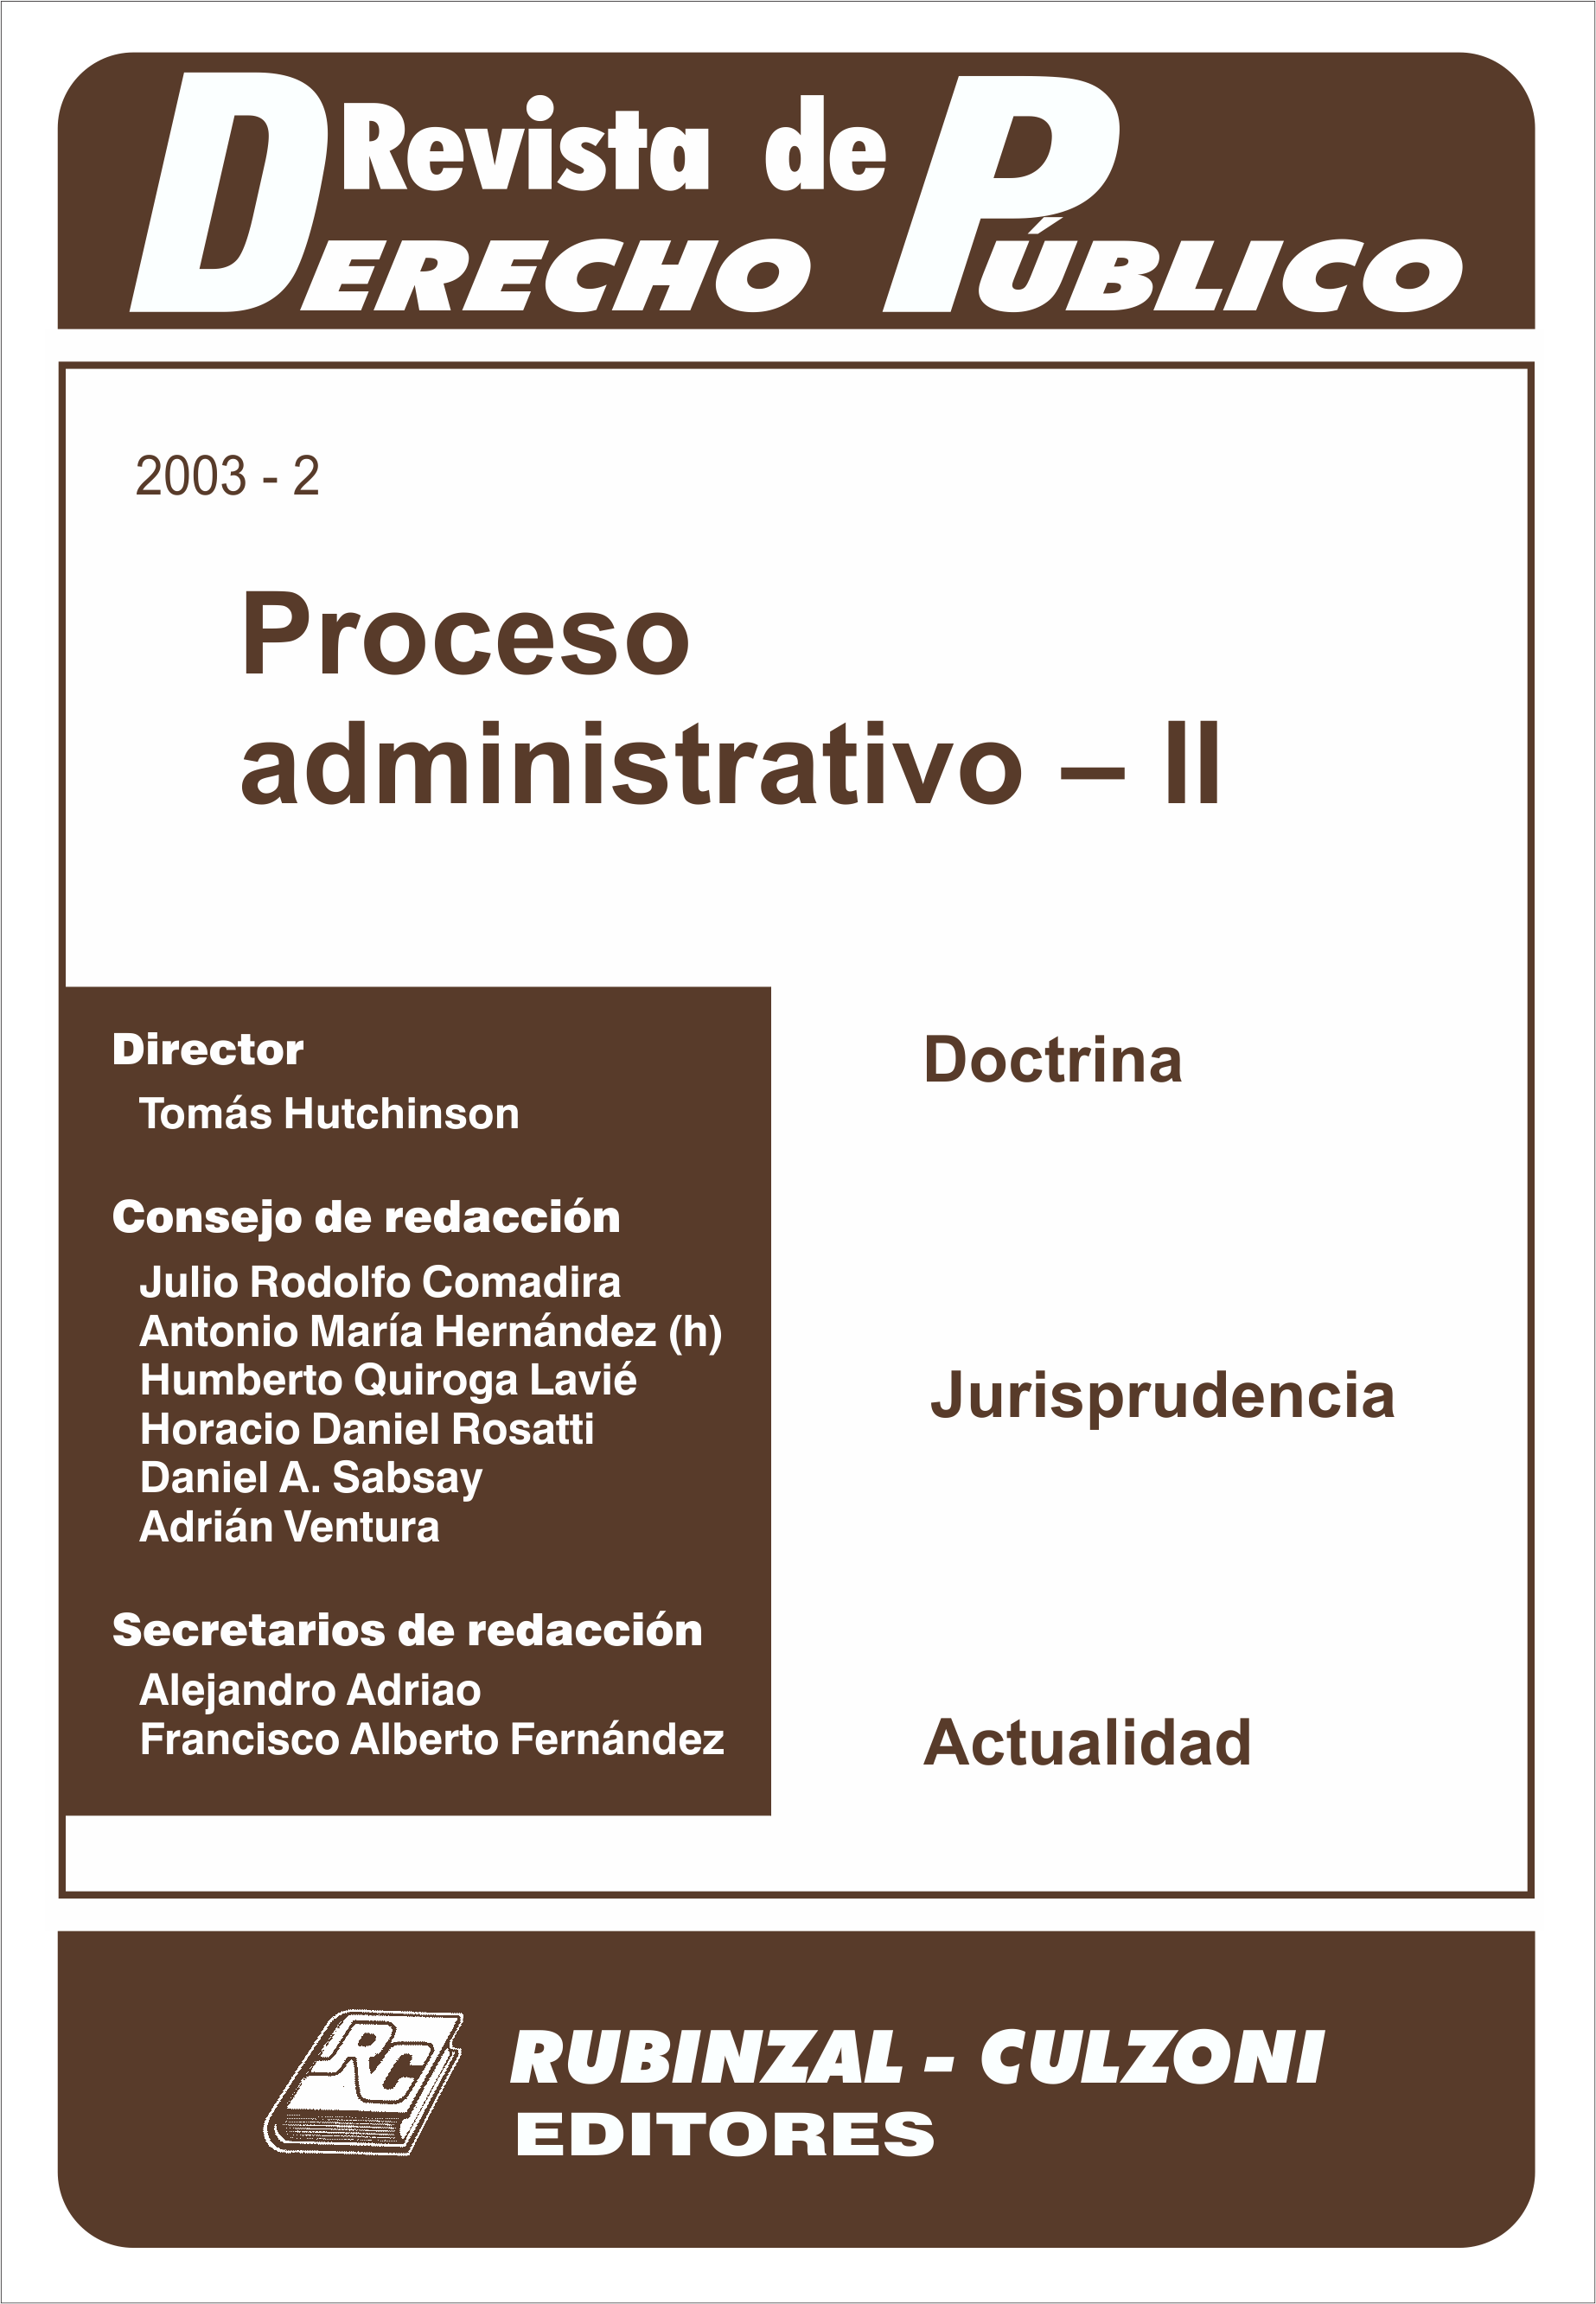 Revista de Derecho Público - Proceso administrativo - II